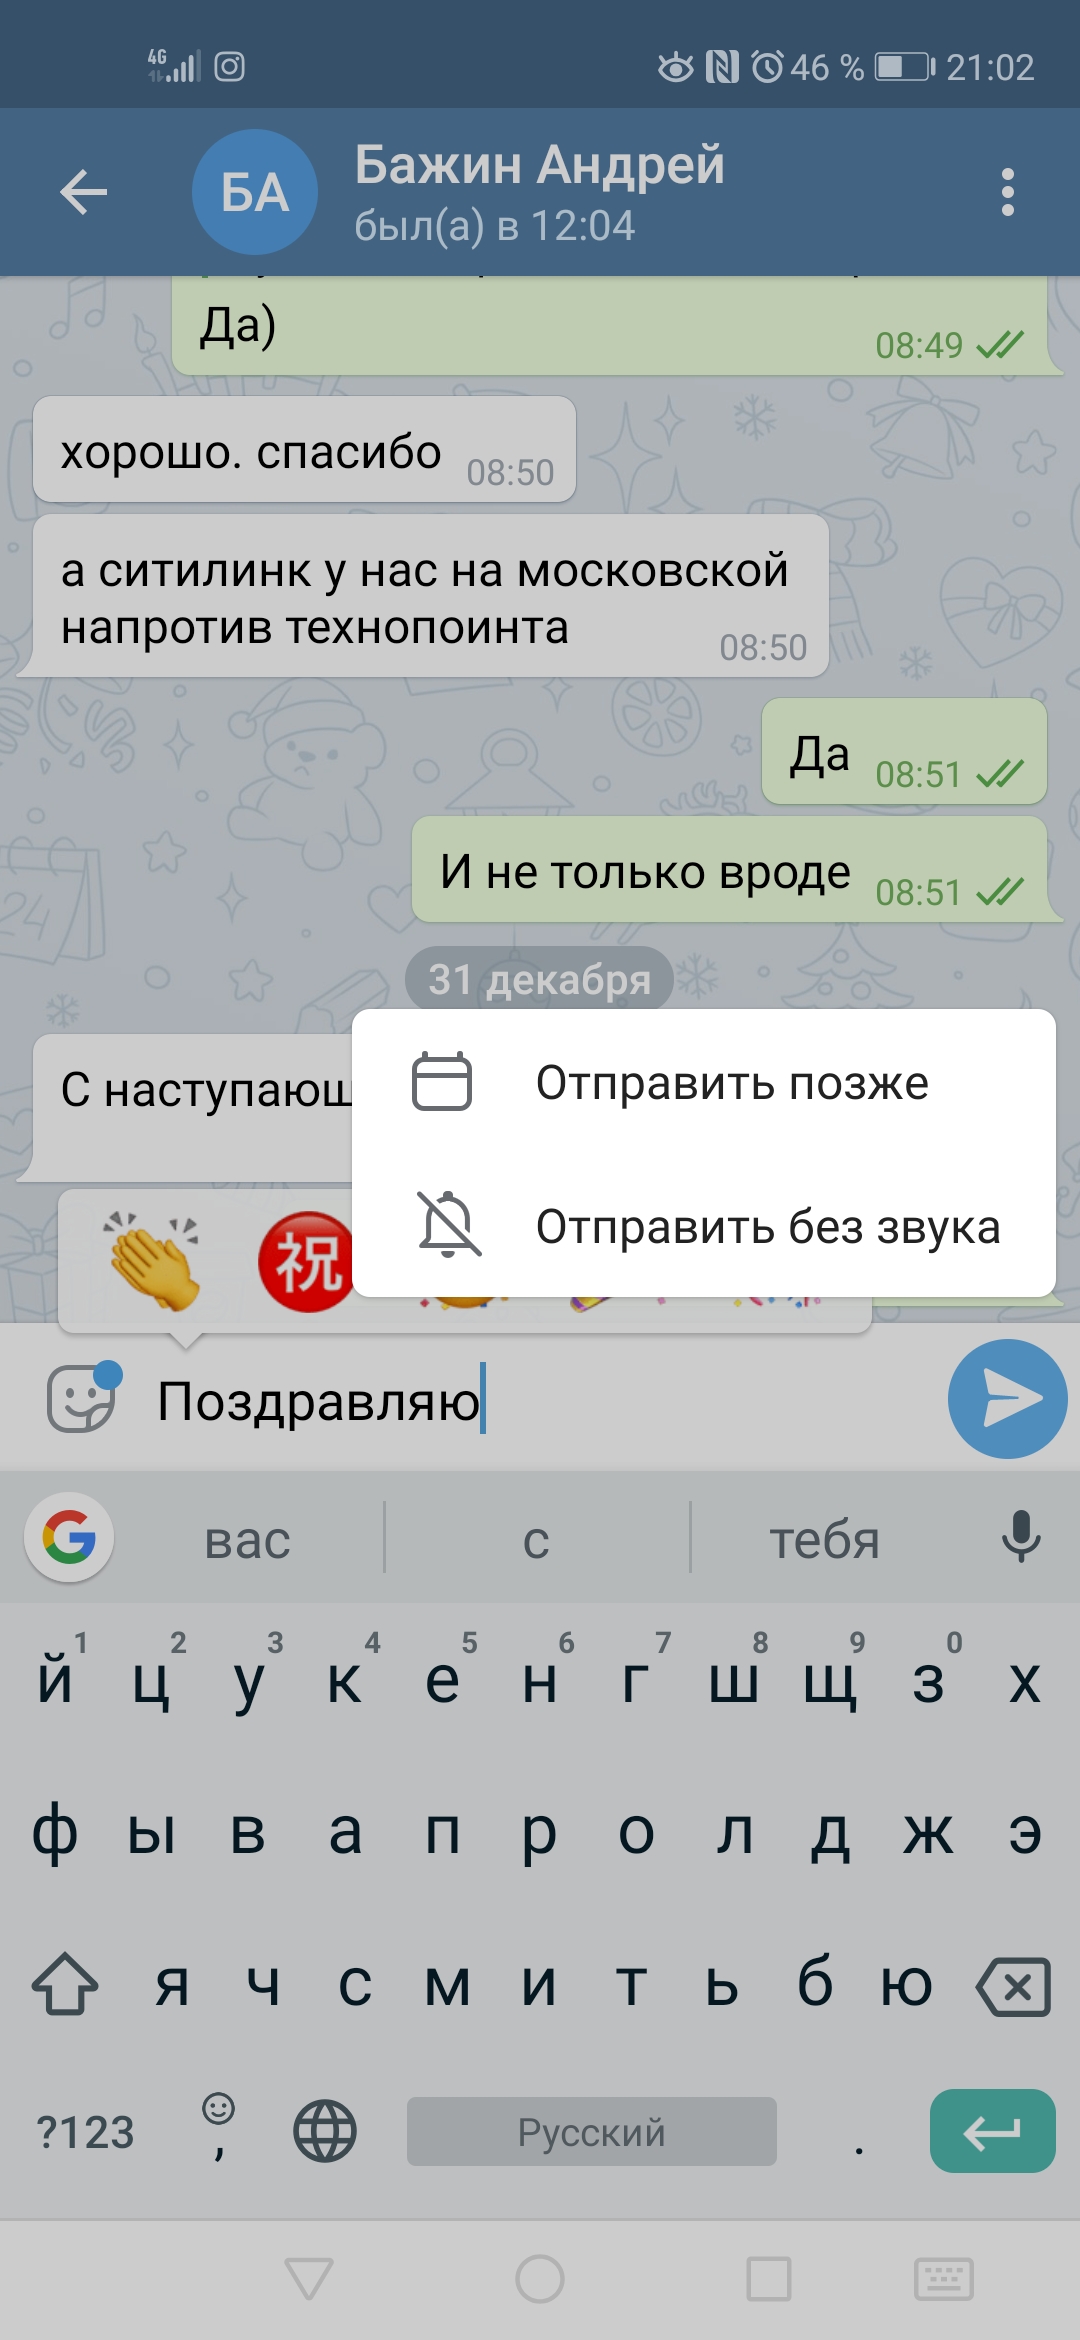 Телеграмм сделать на русском языке фото 109